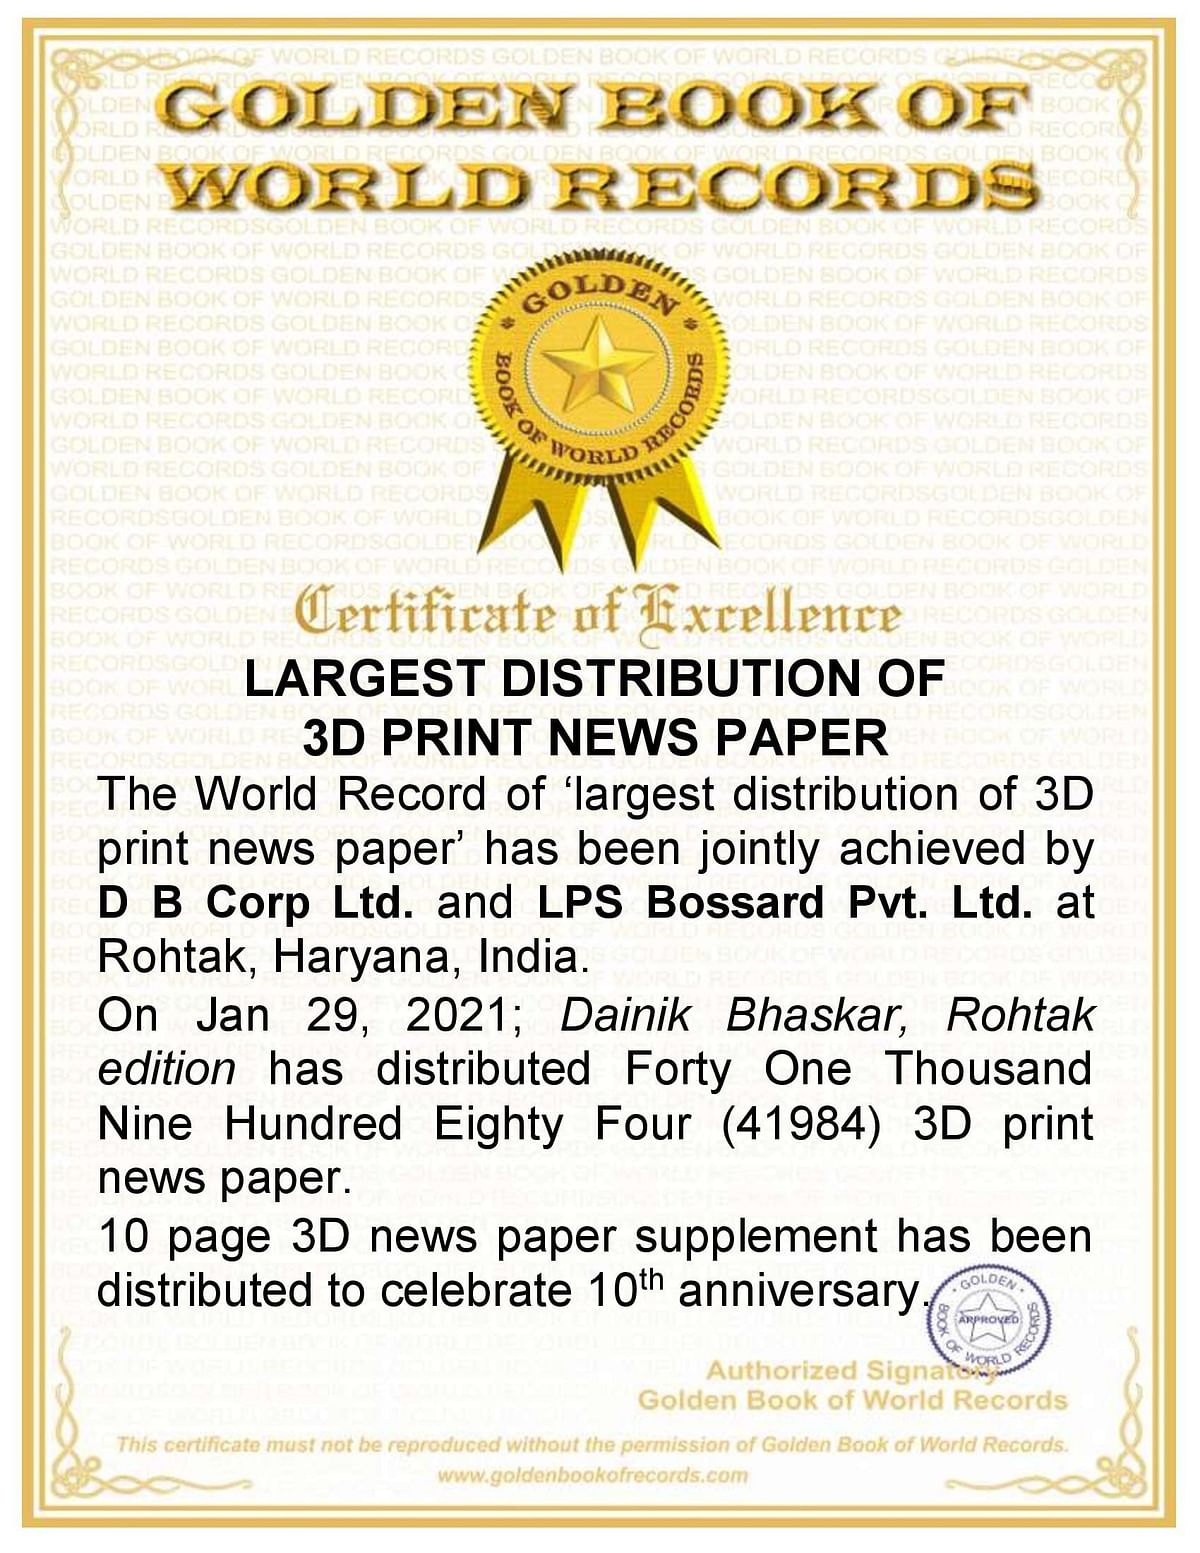 Dainik Bhaskar distributes 82-page 3D newspaper in Rohtak